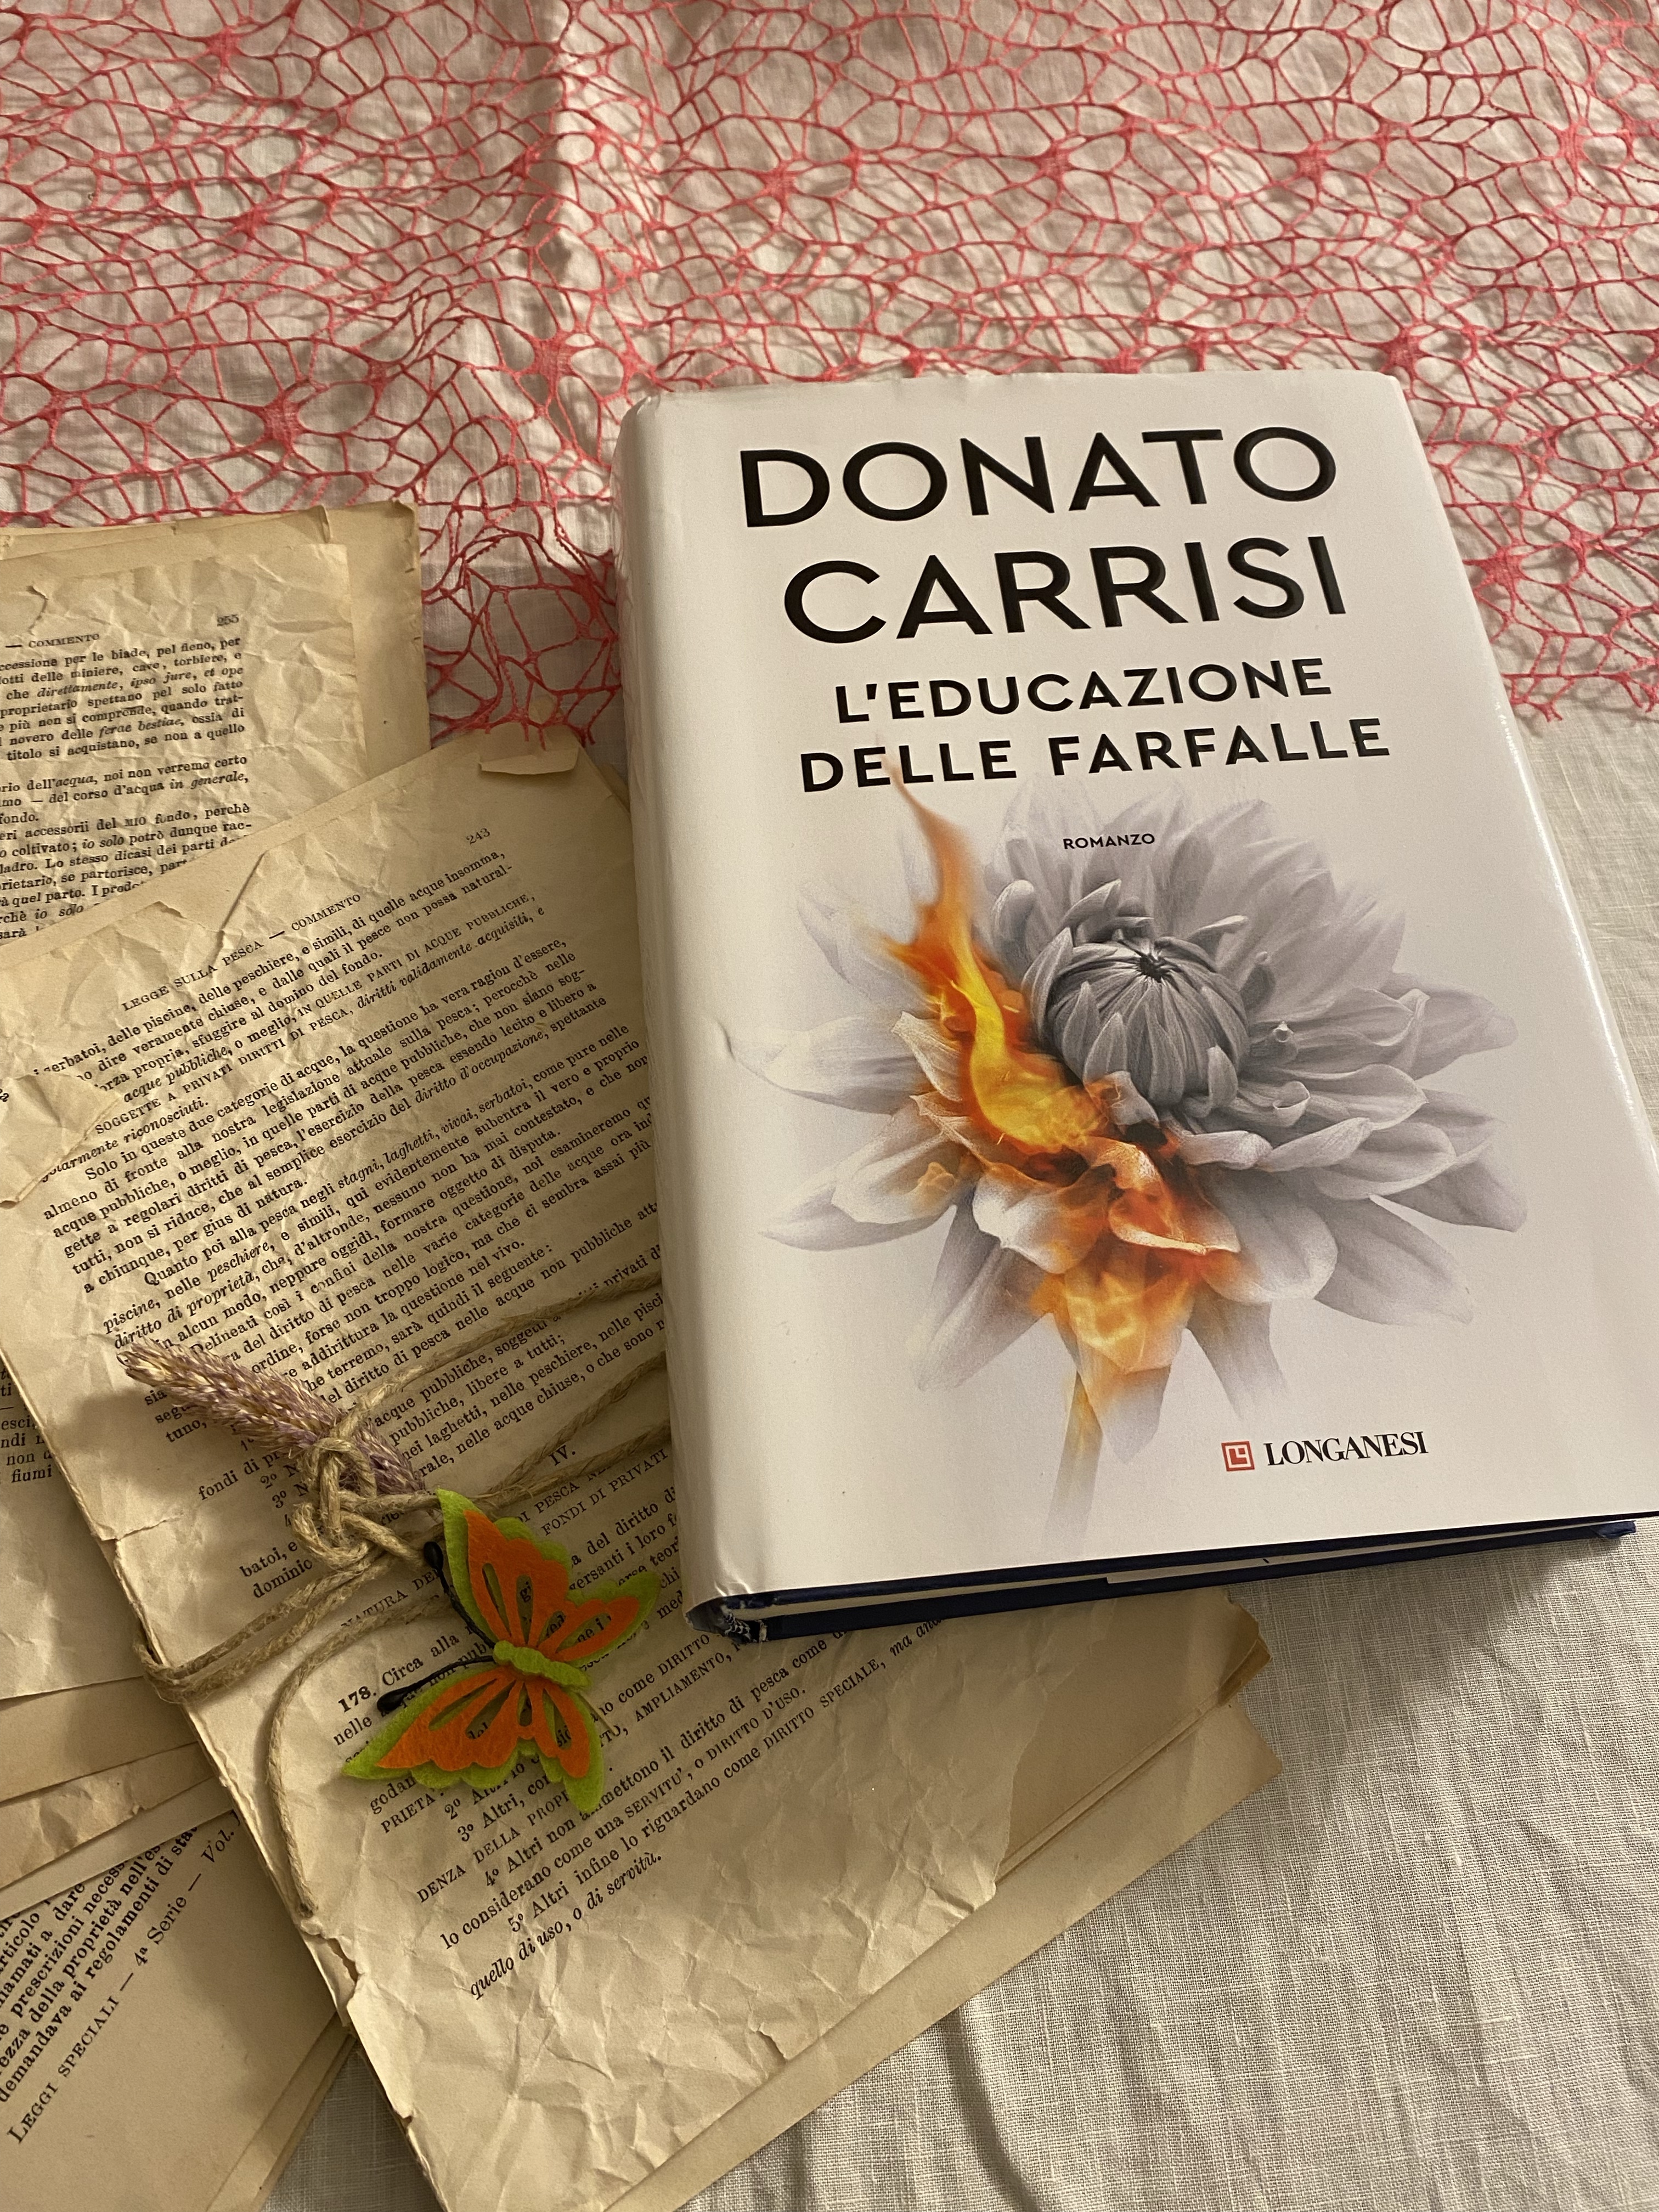 L'EDUCAZIONE DELLE FARFALLE di Donato Carrisi – Libri nell'aria